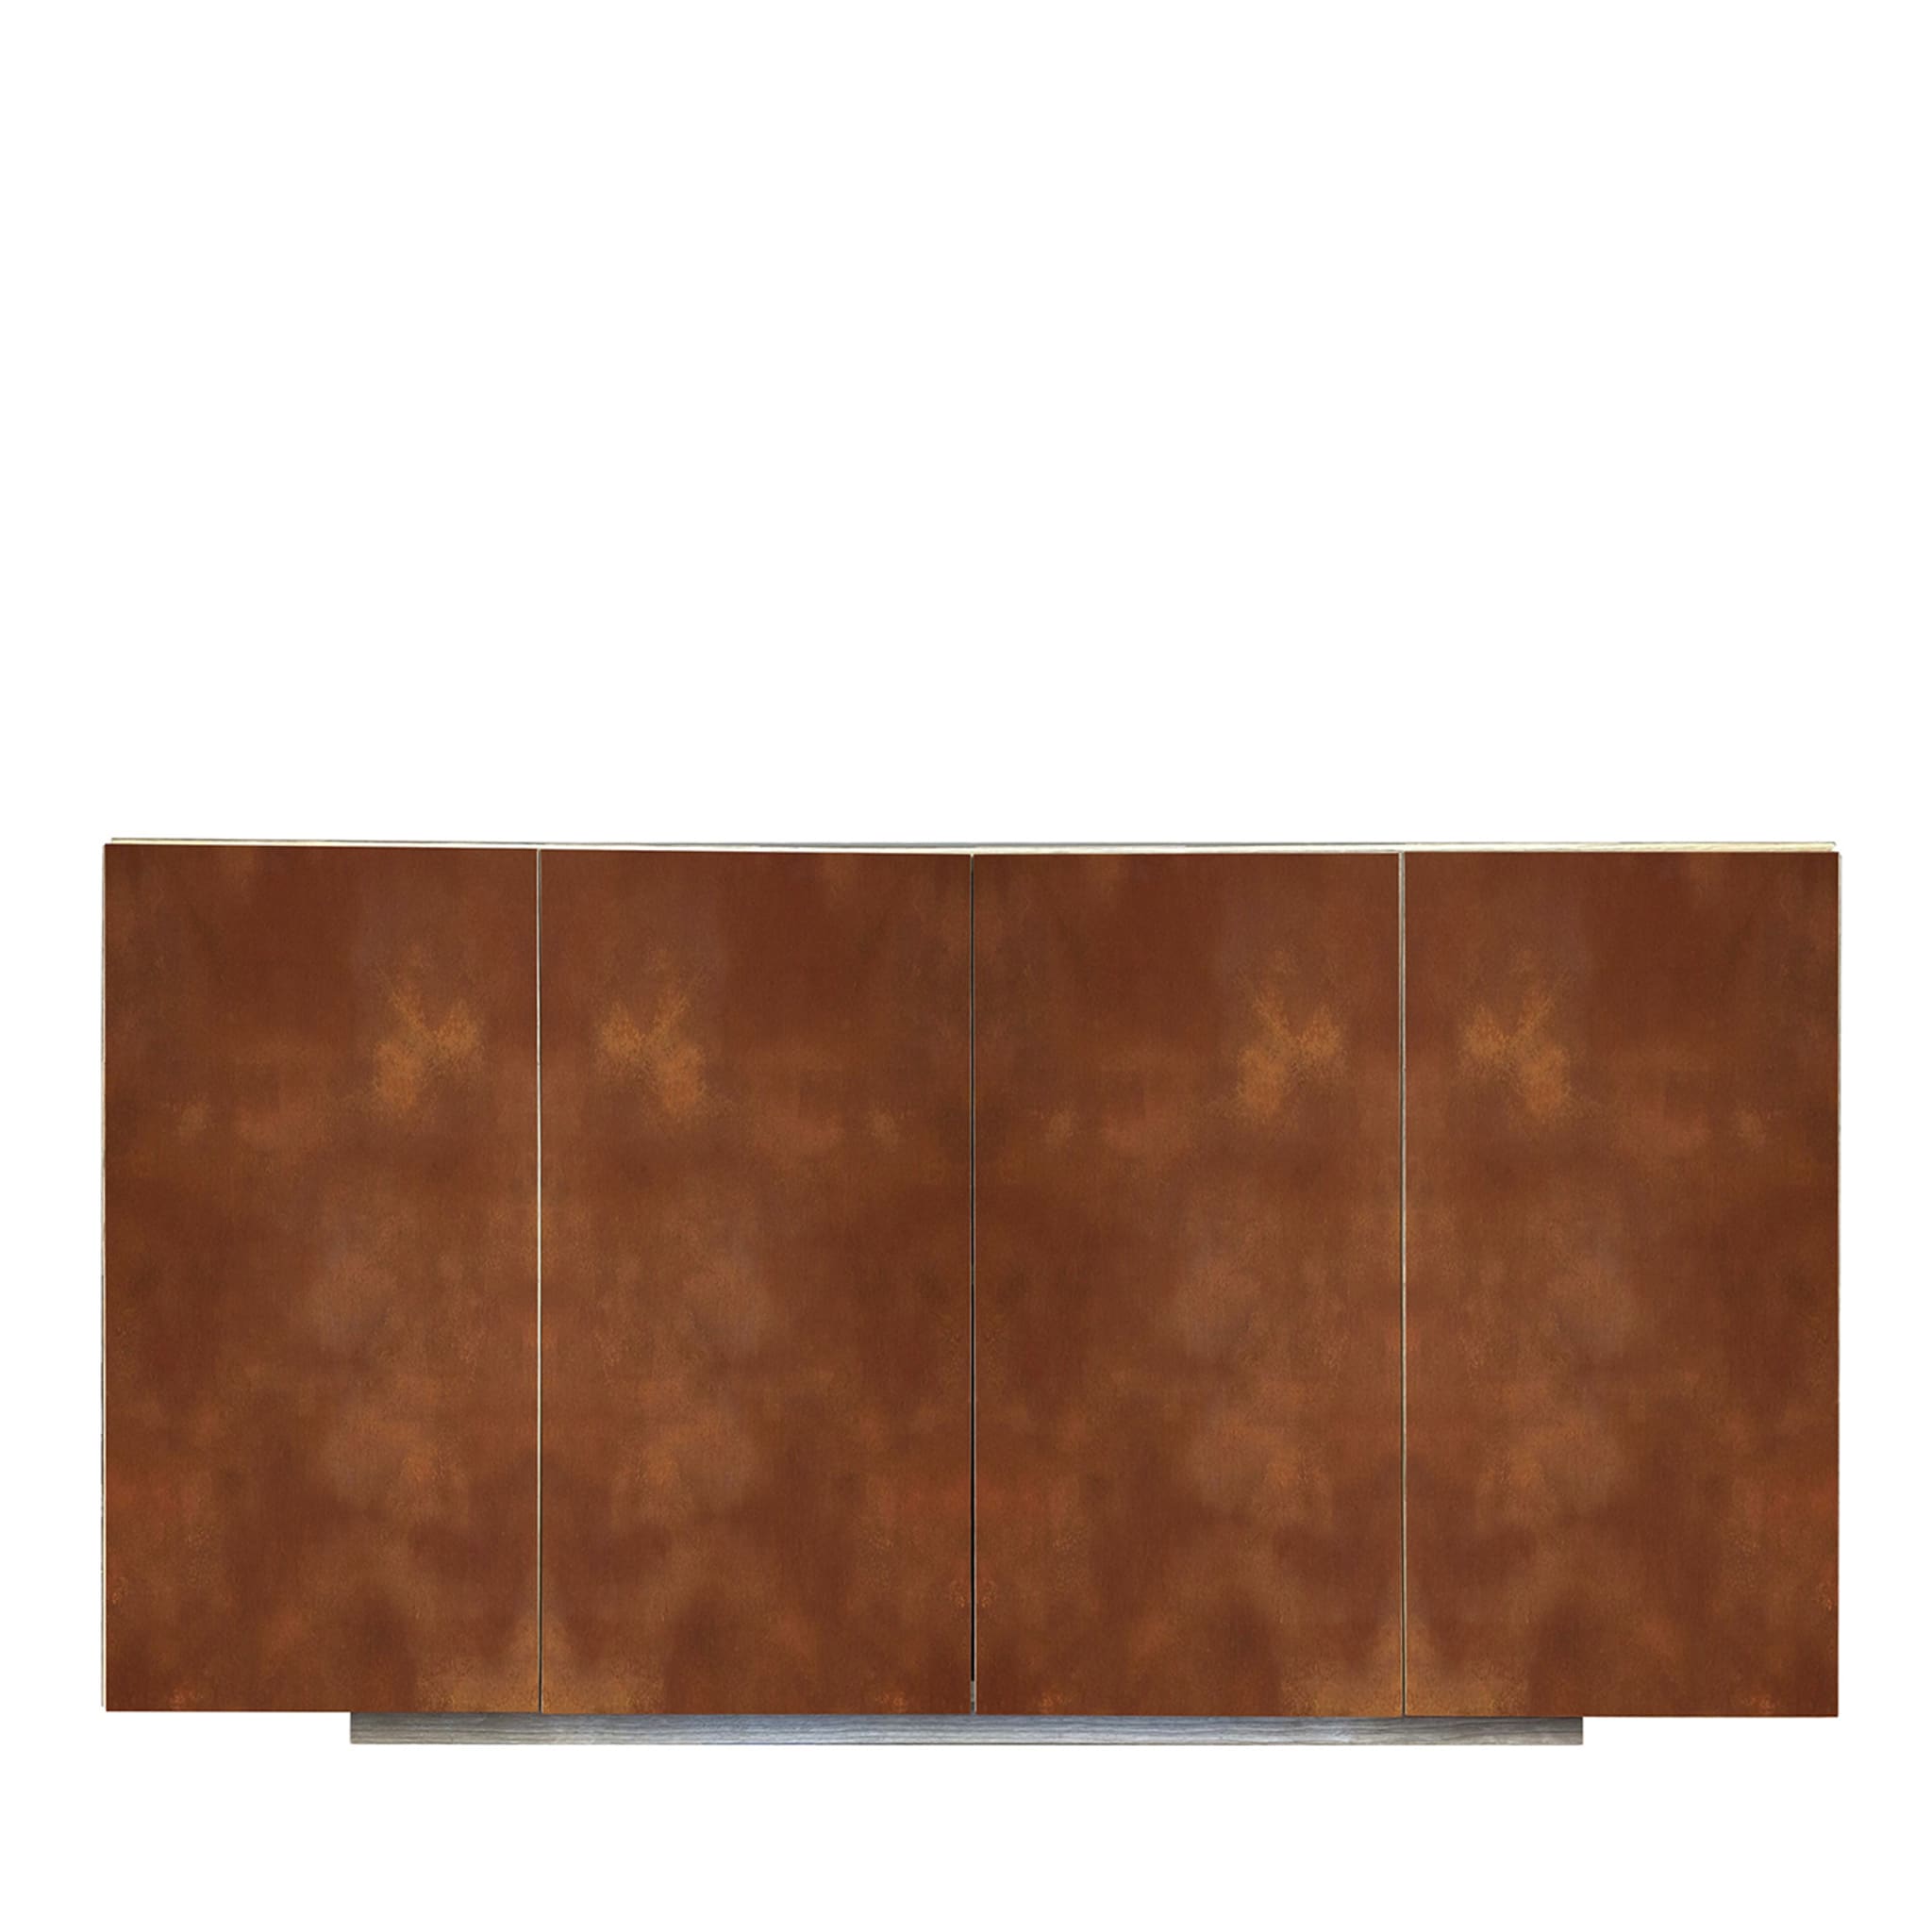 Boccadarno Quattro 4-Door Rust Sideboard by Meccani Studio - Main view